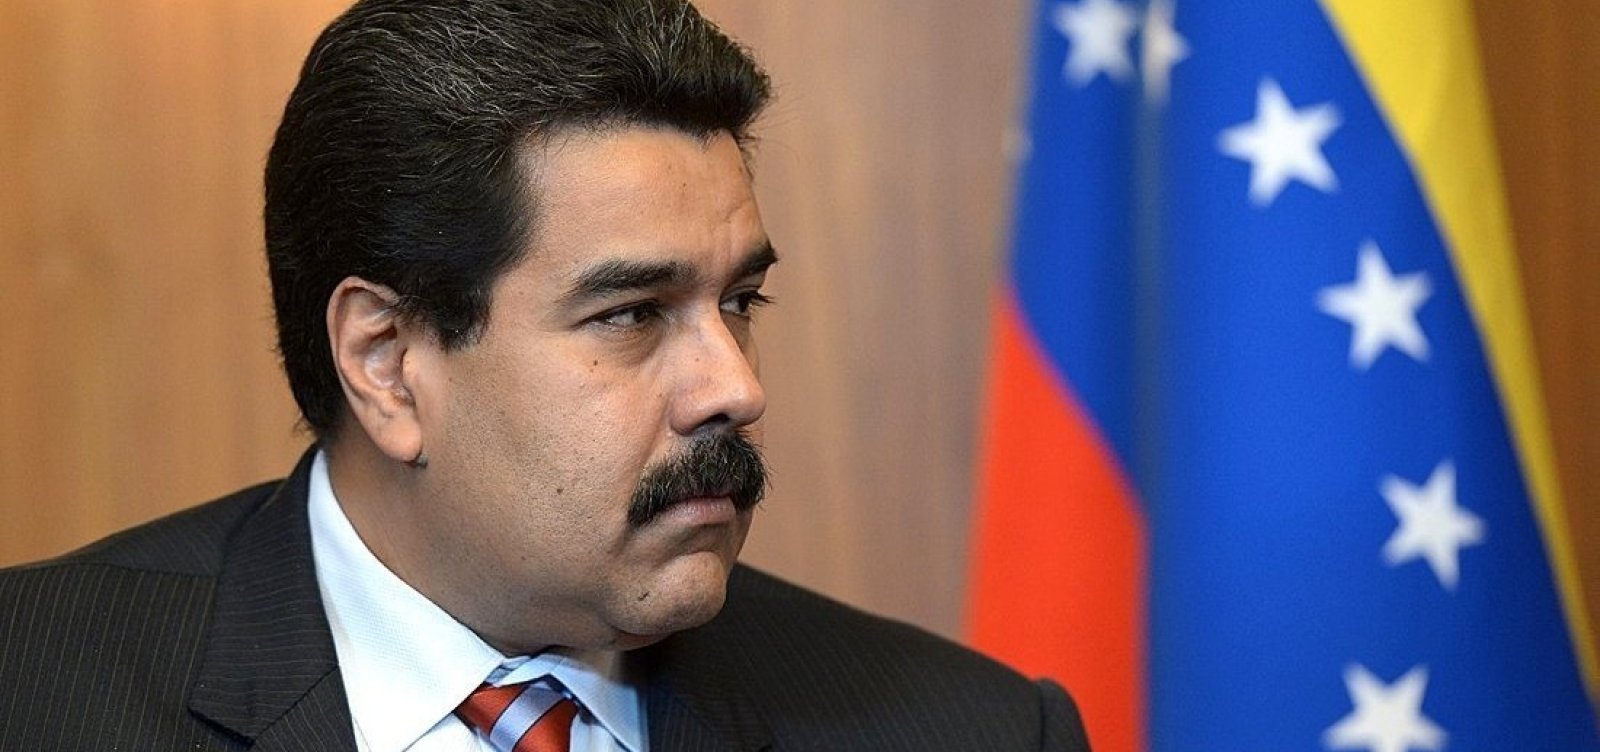 Governo decide barrar entrada de funcionários do regime de Maduro no Brasil